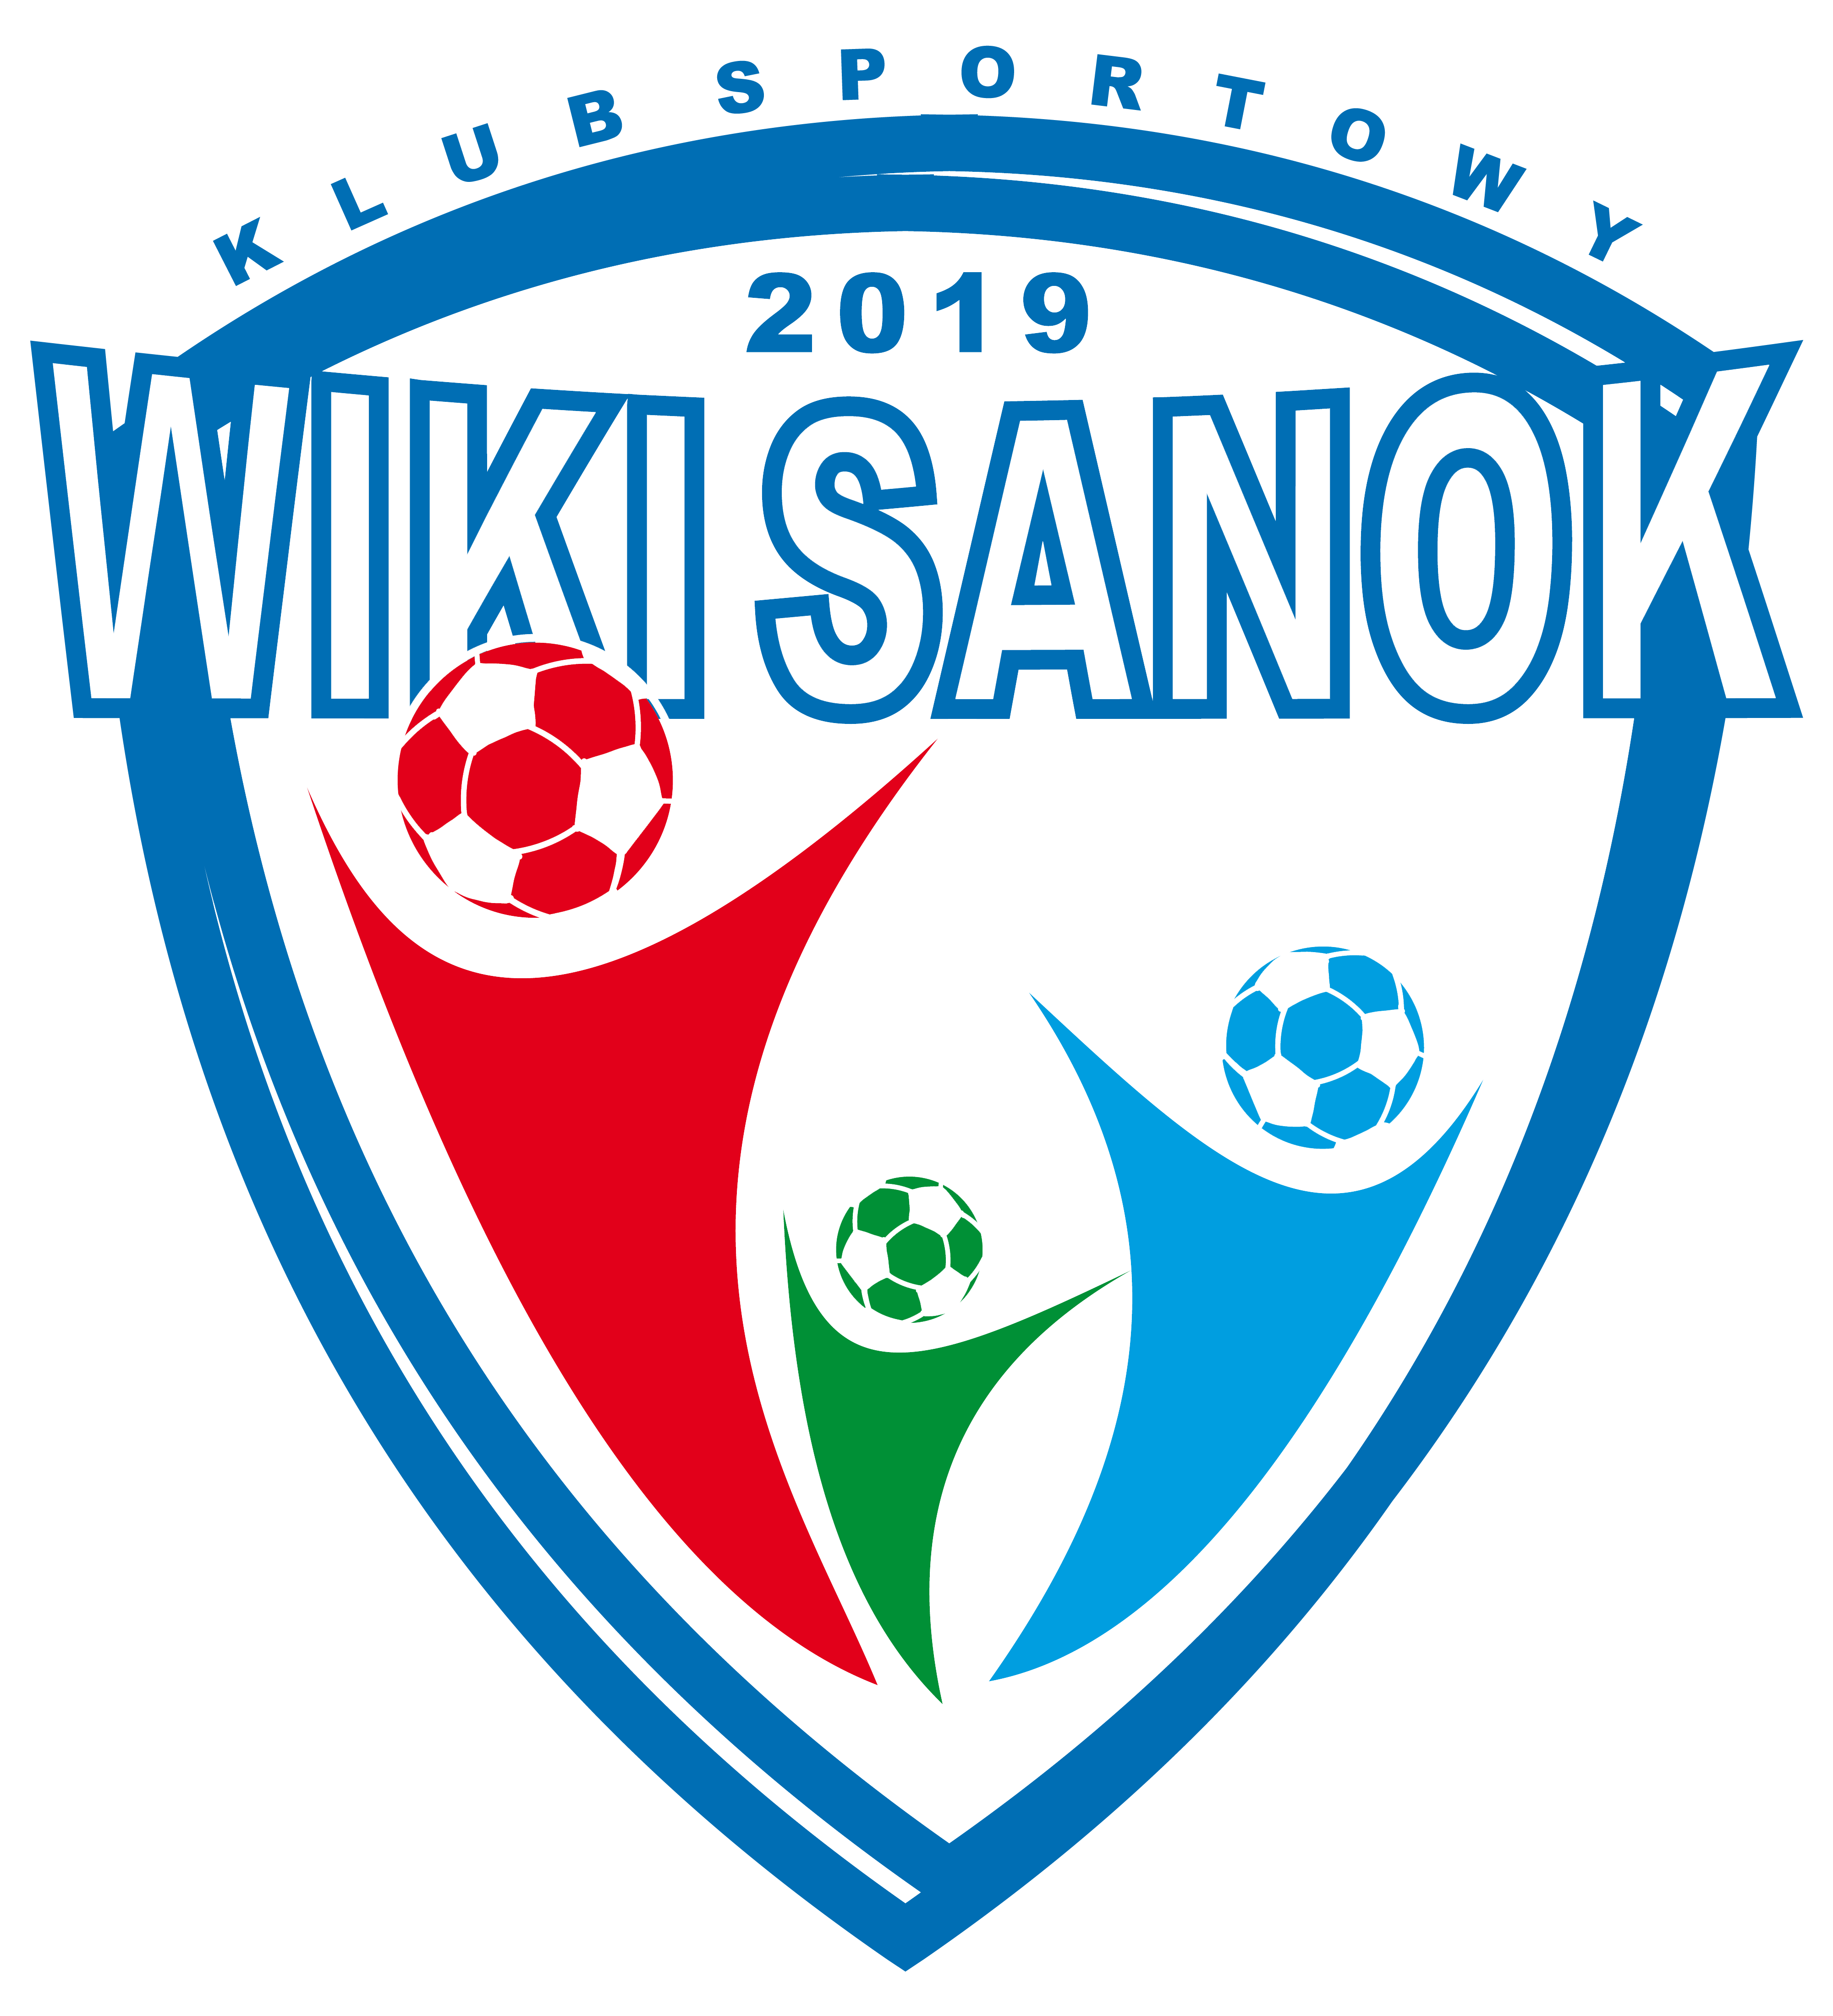 Wiki Sanok